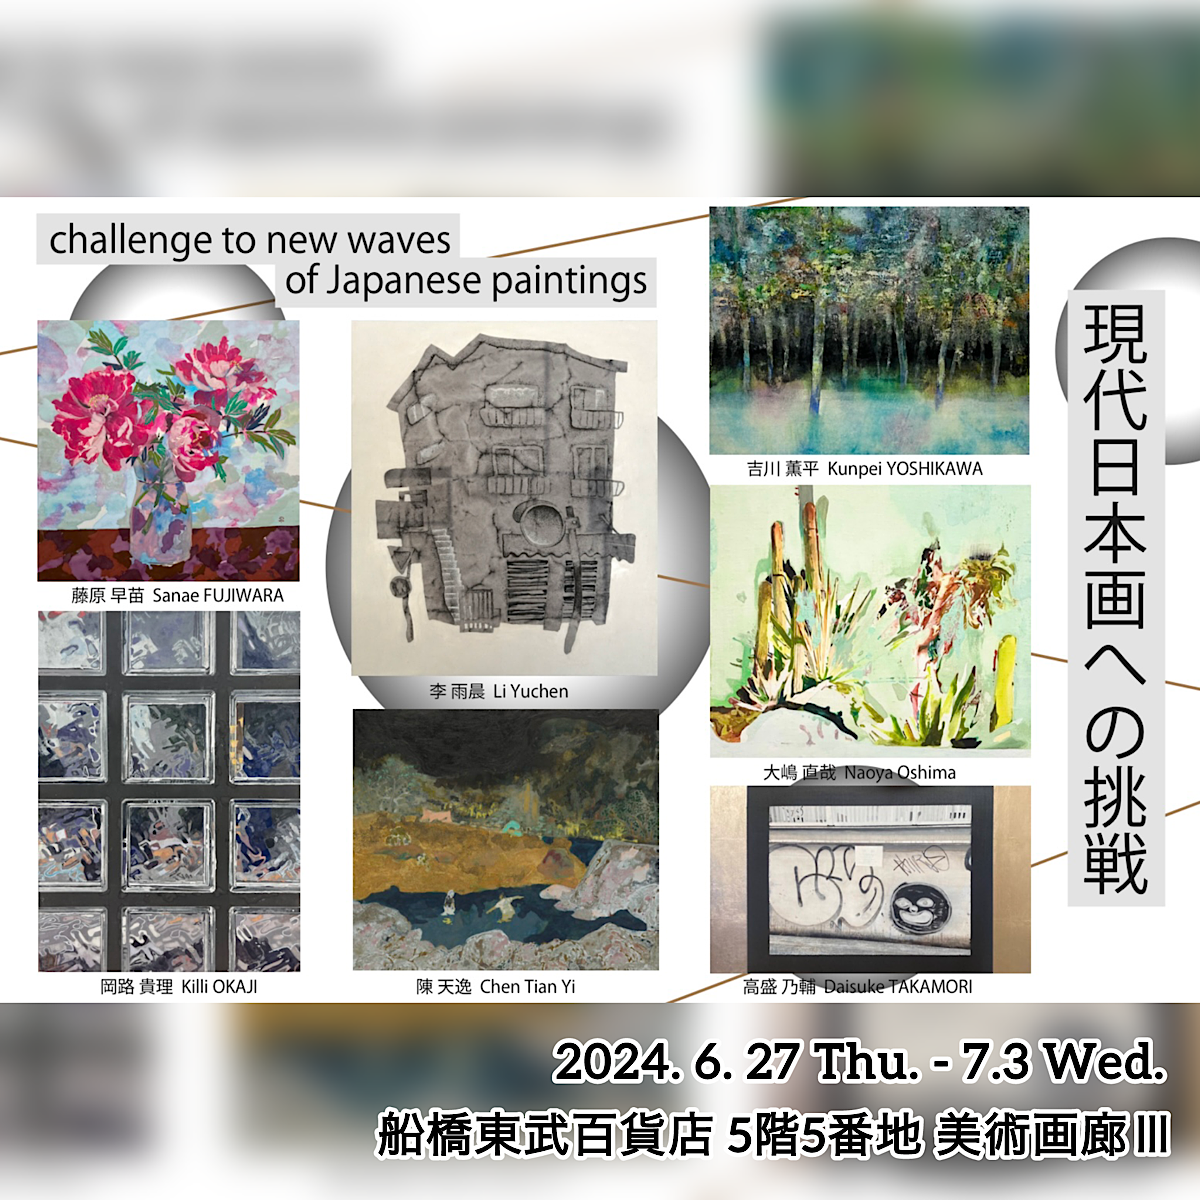 「現代日本画への挑戦 -Challenge to new waves of Japanese paintings-」(2024年6月27日(木)-7月3日(水)) 船橋東武百貨店５階 美術画廊Ⅲにて開催！